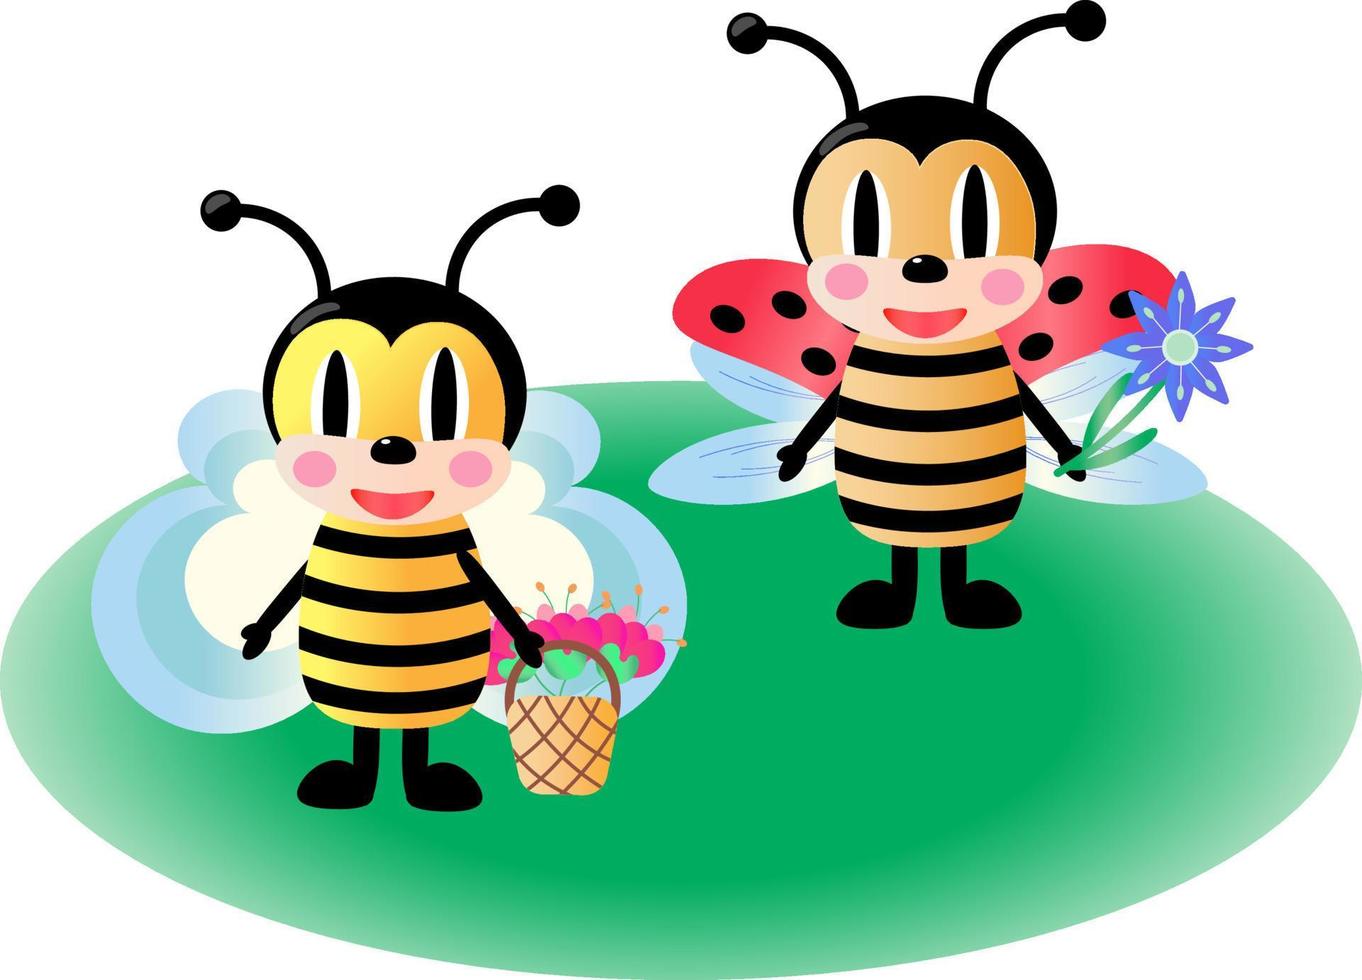 carino ape e coccinella. prato verde e fiori. illustrazione del fumetto vettoriale isolata su sfondo bianco.